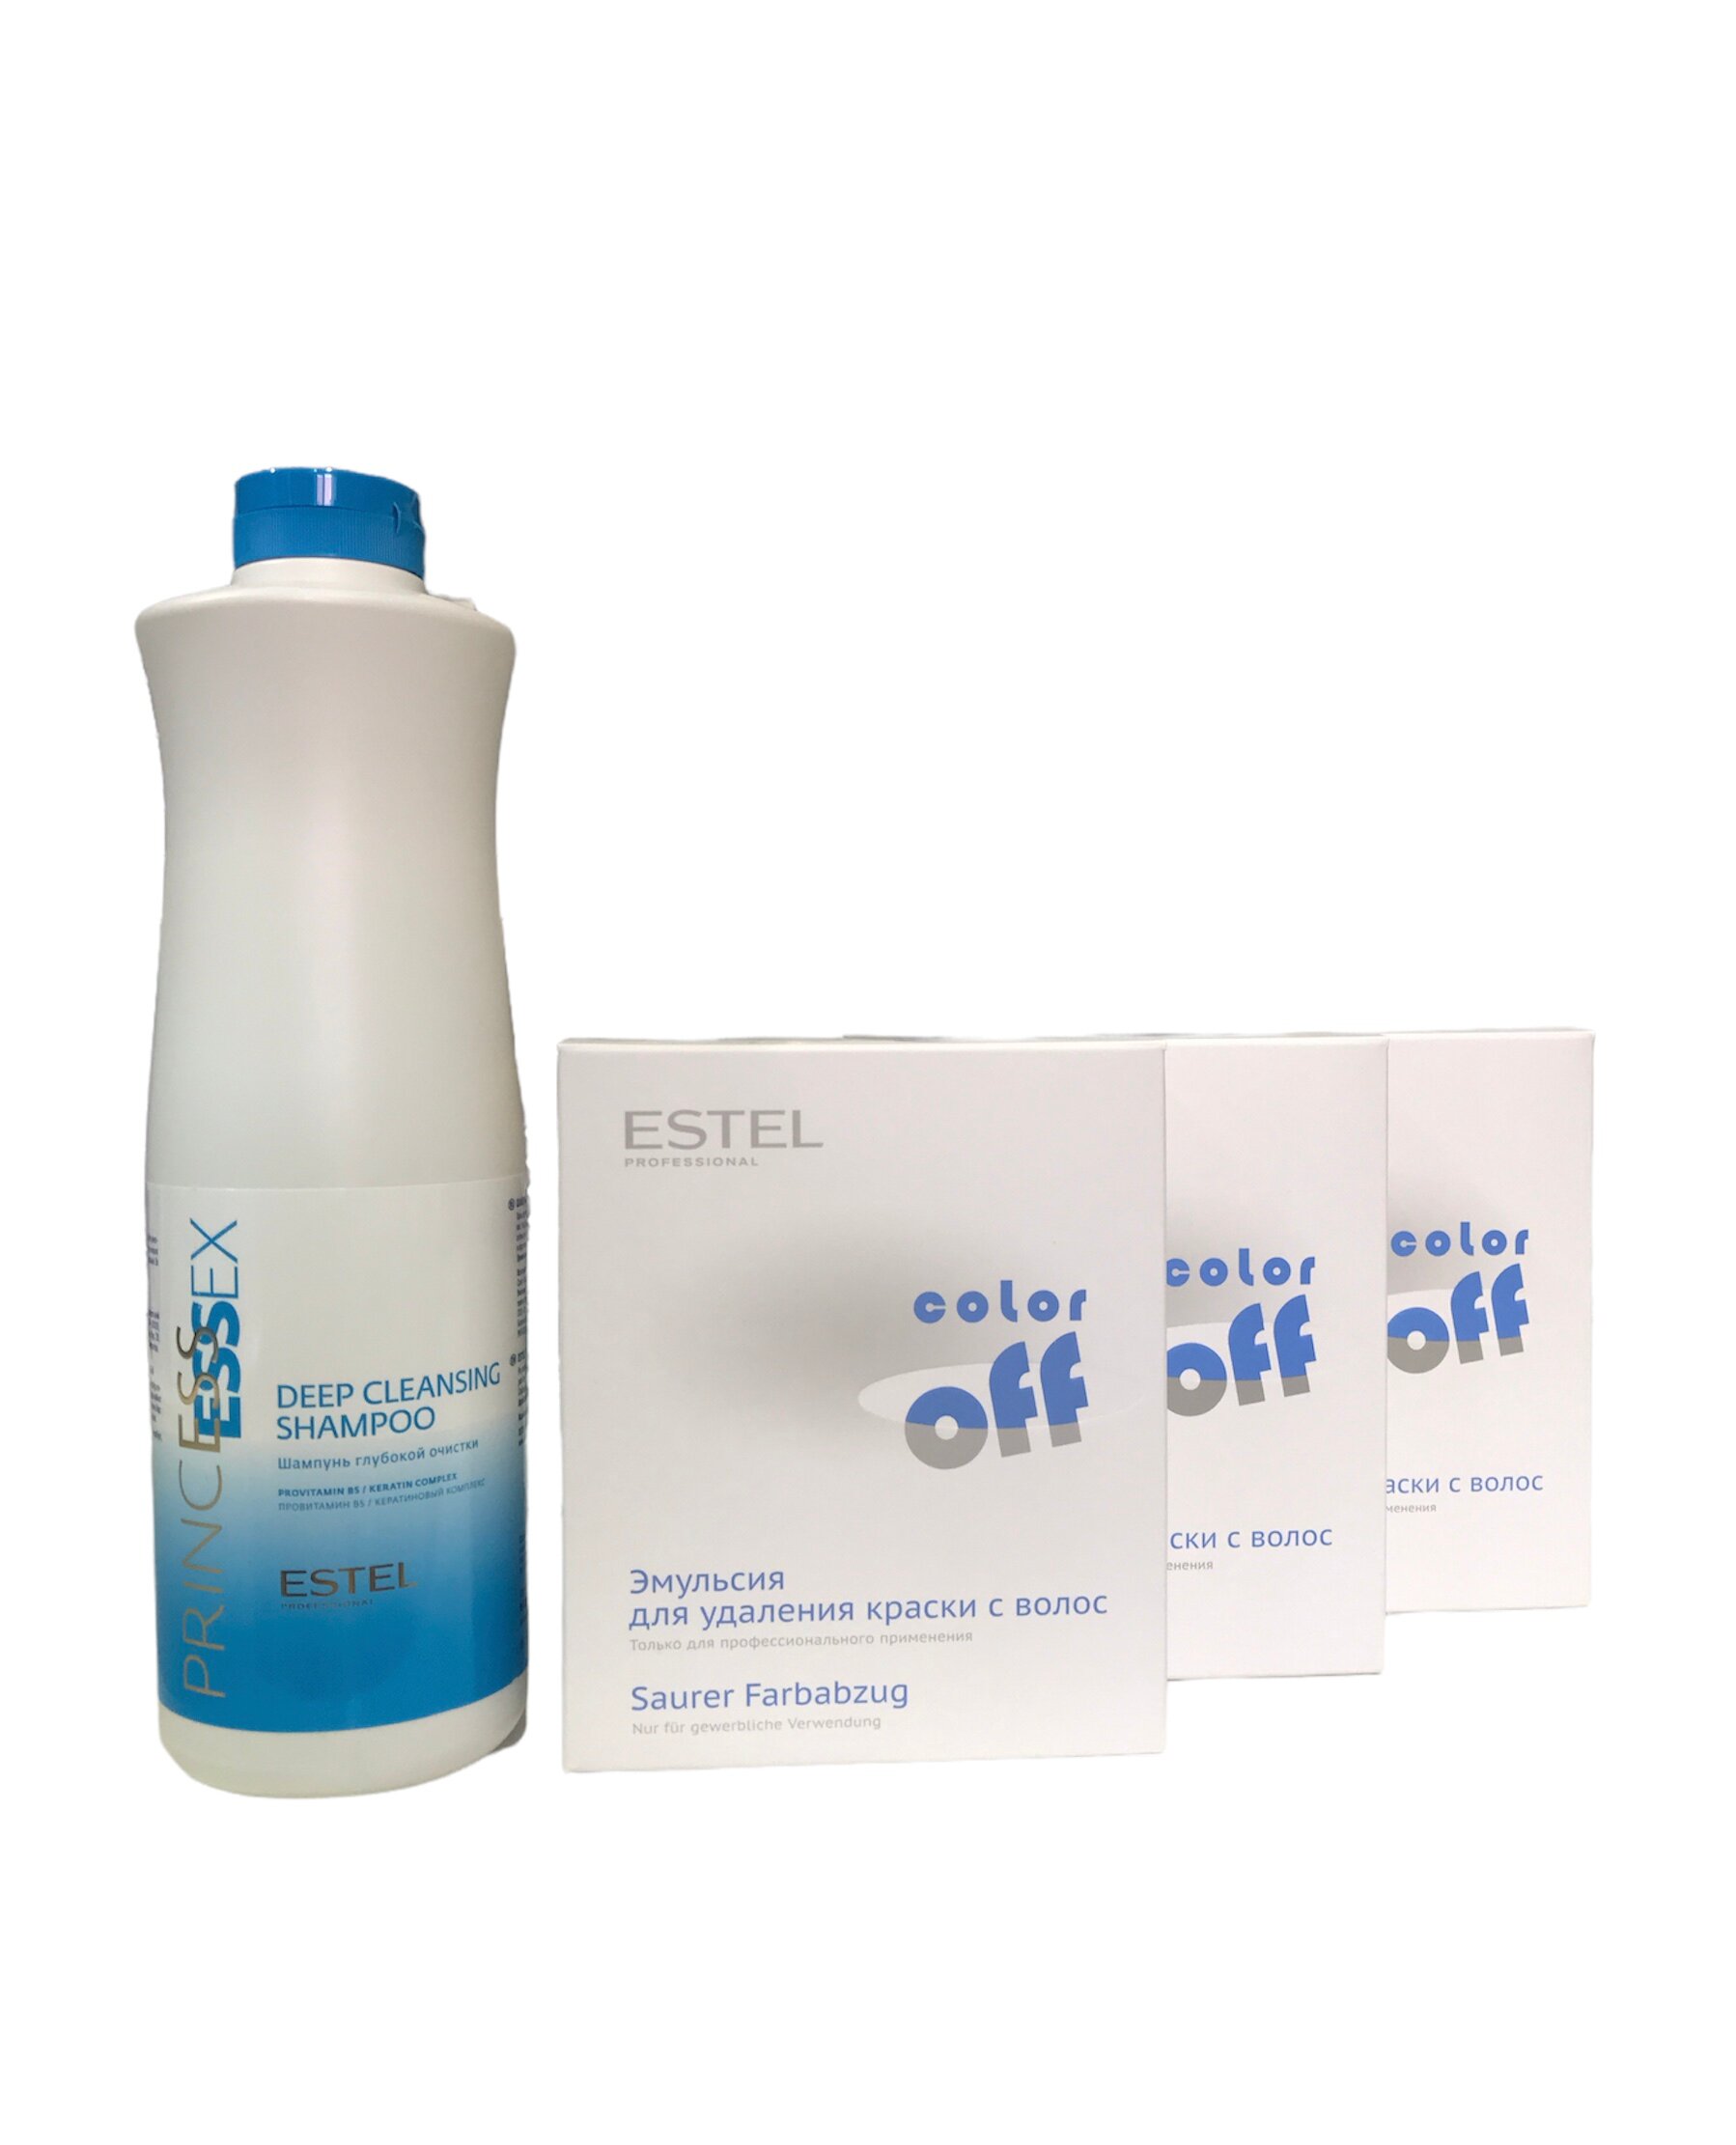 Набор ESTEL Эмульсия для удаления краски с волос Color Off 3 шт+Шампунь 1000 мл эмульсия перед использованием шампуня scalp detox